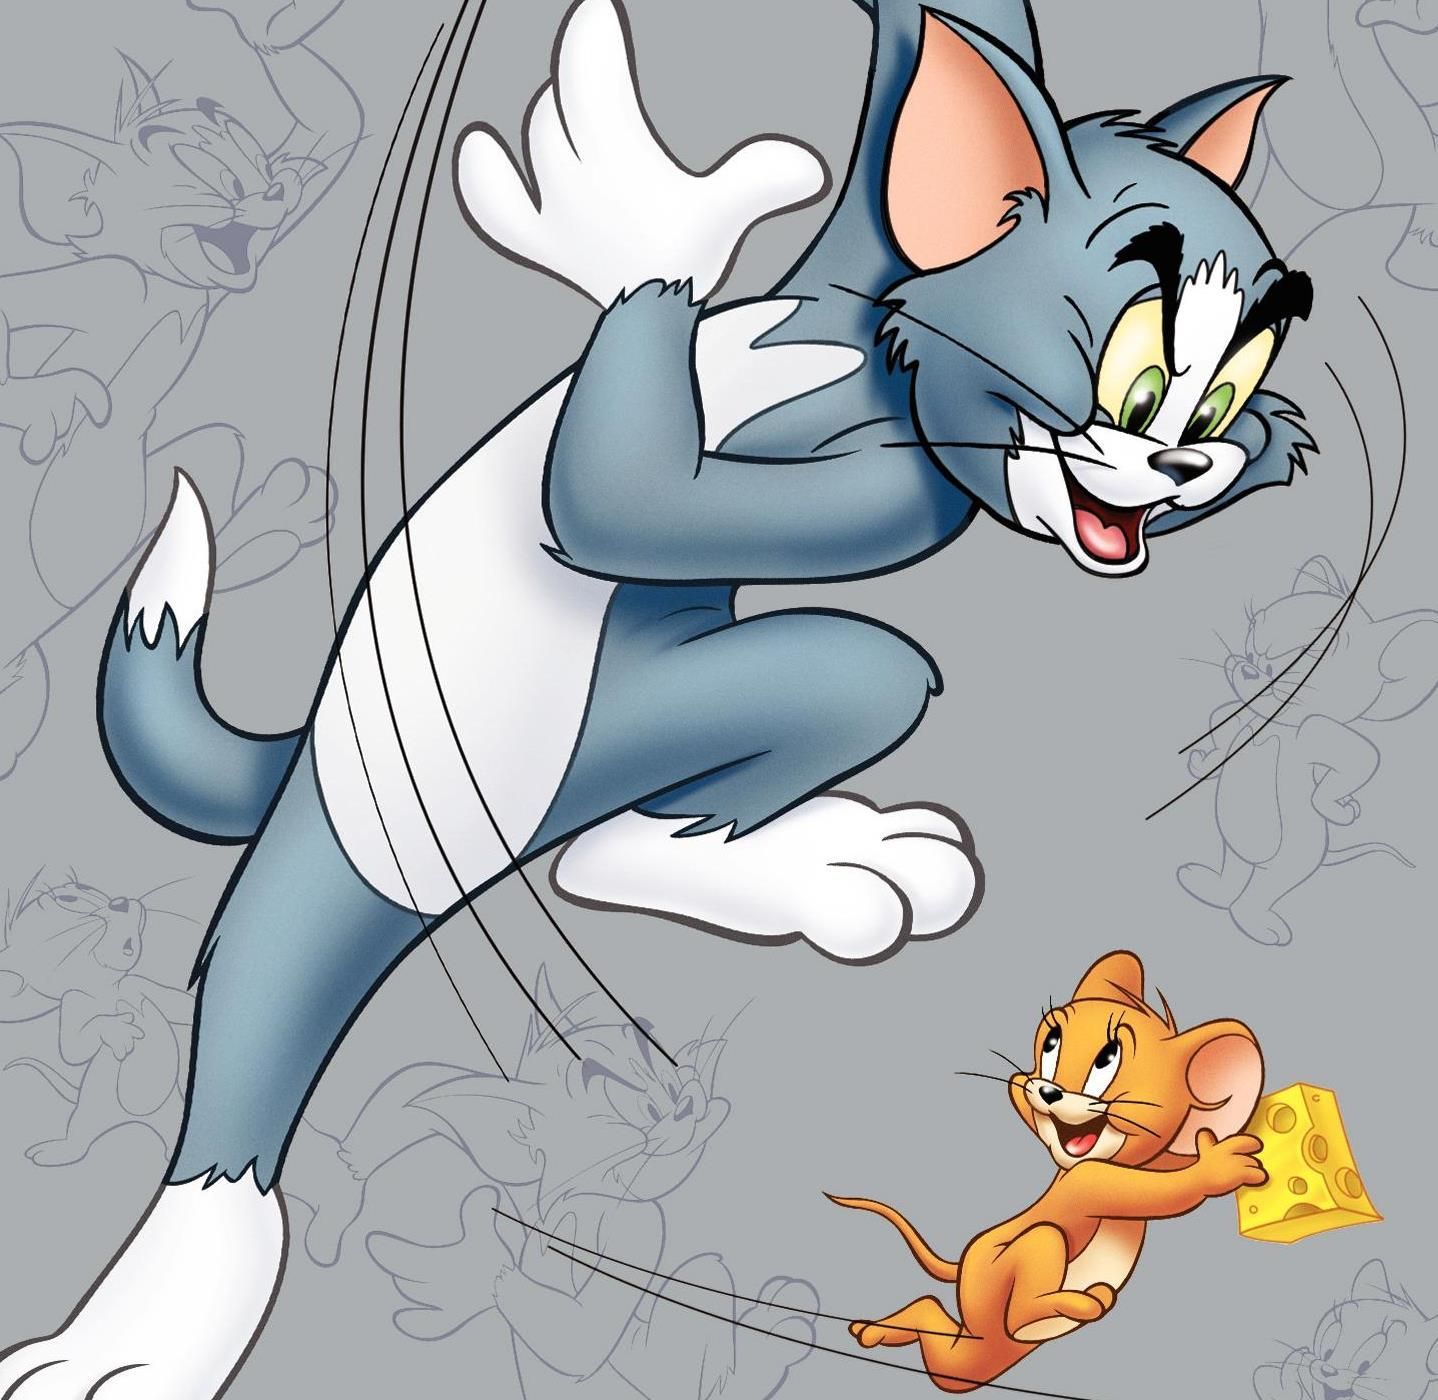 tom and jerry cartoon. Tom and Jerry Cartoon, Tom and Jerry (8). Tom and jerry wallpaper, Tom and jerry cartoon, Cartoon wallpaper